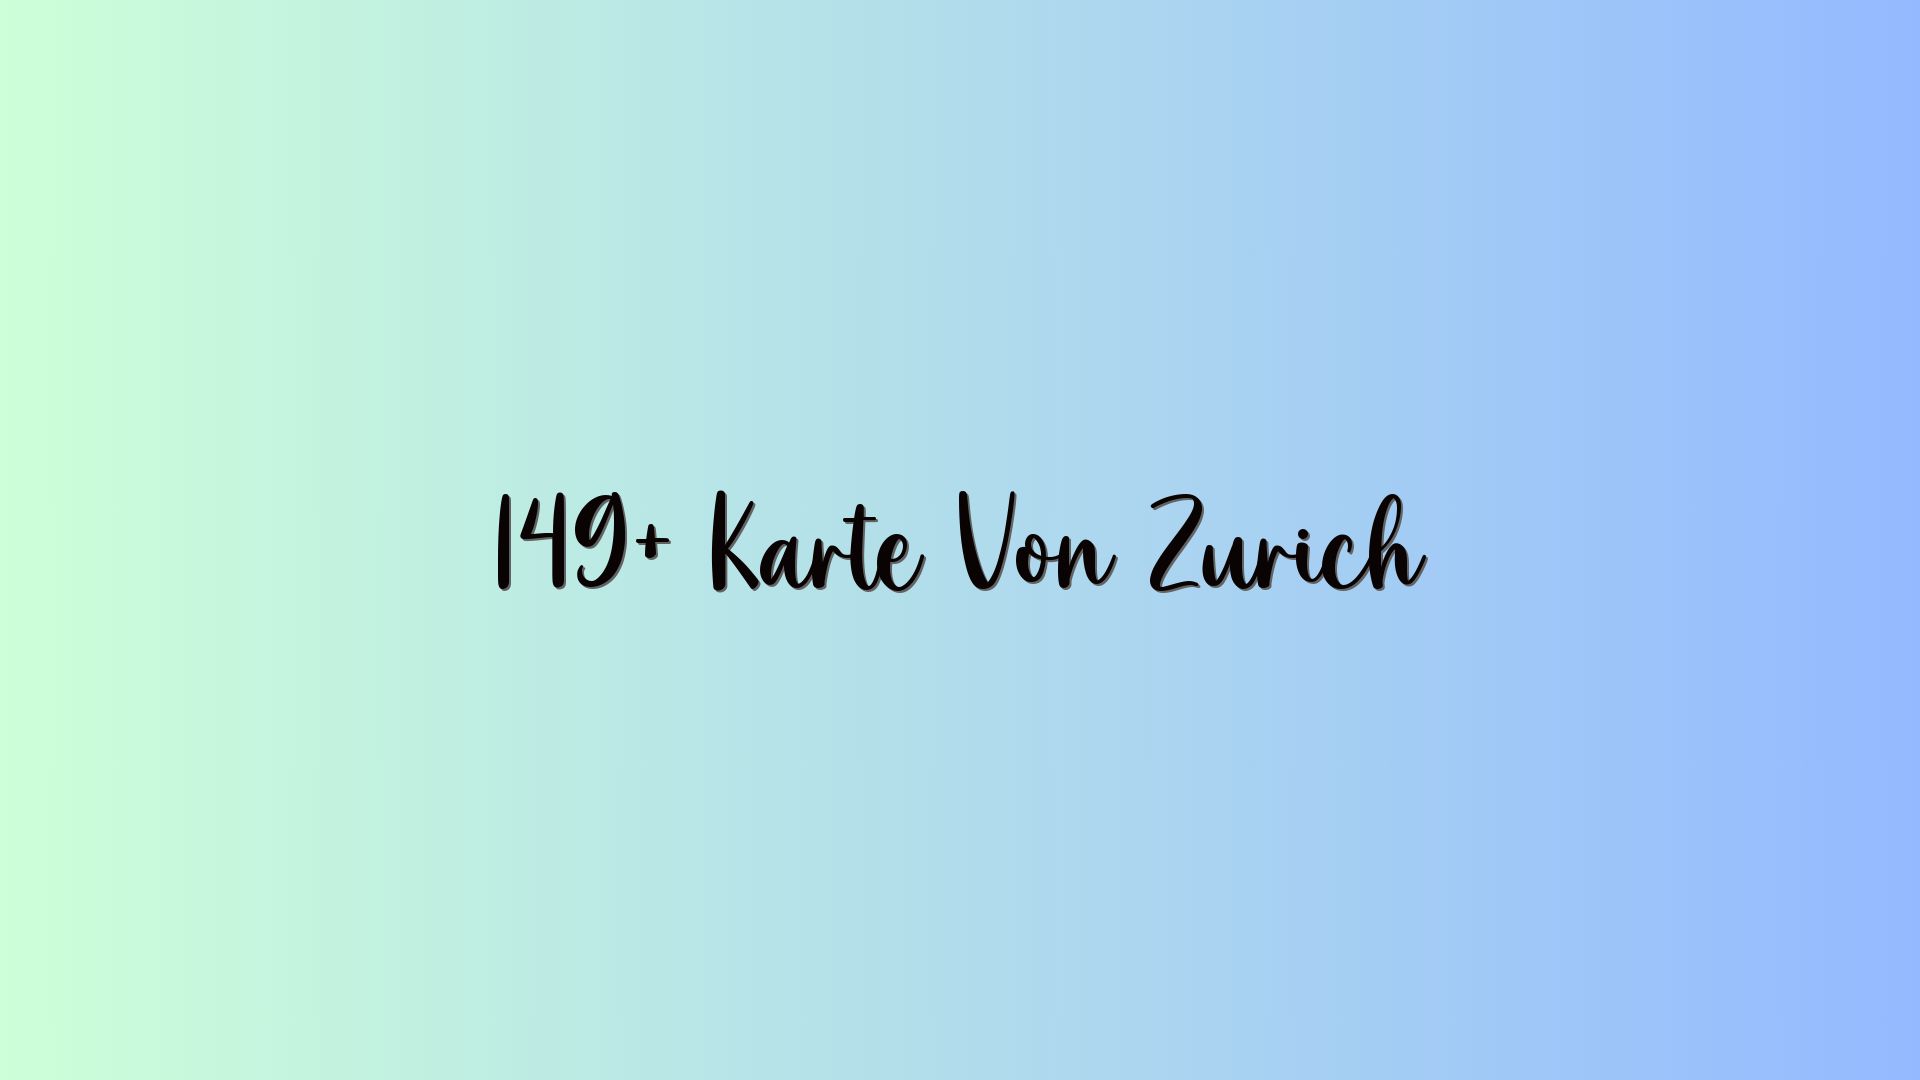 149+ Karte Von Zürich